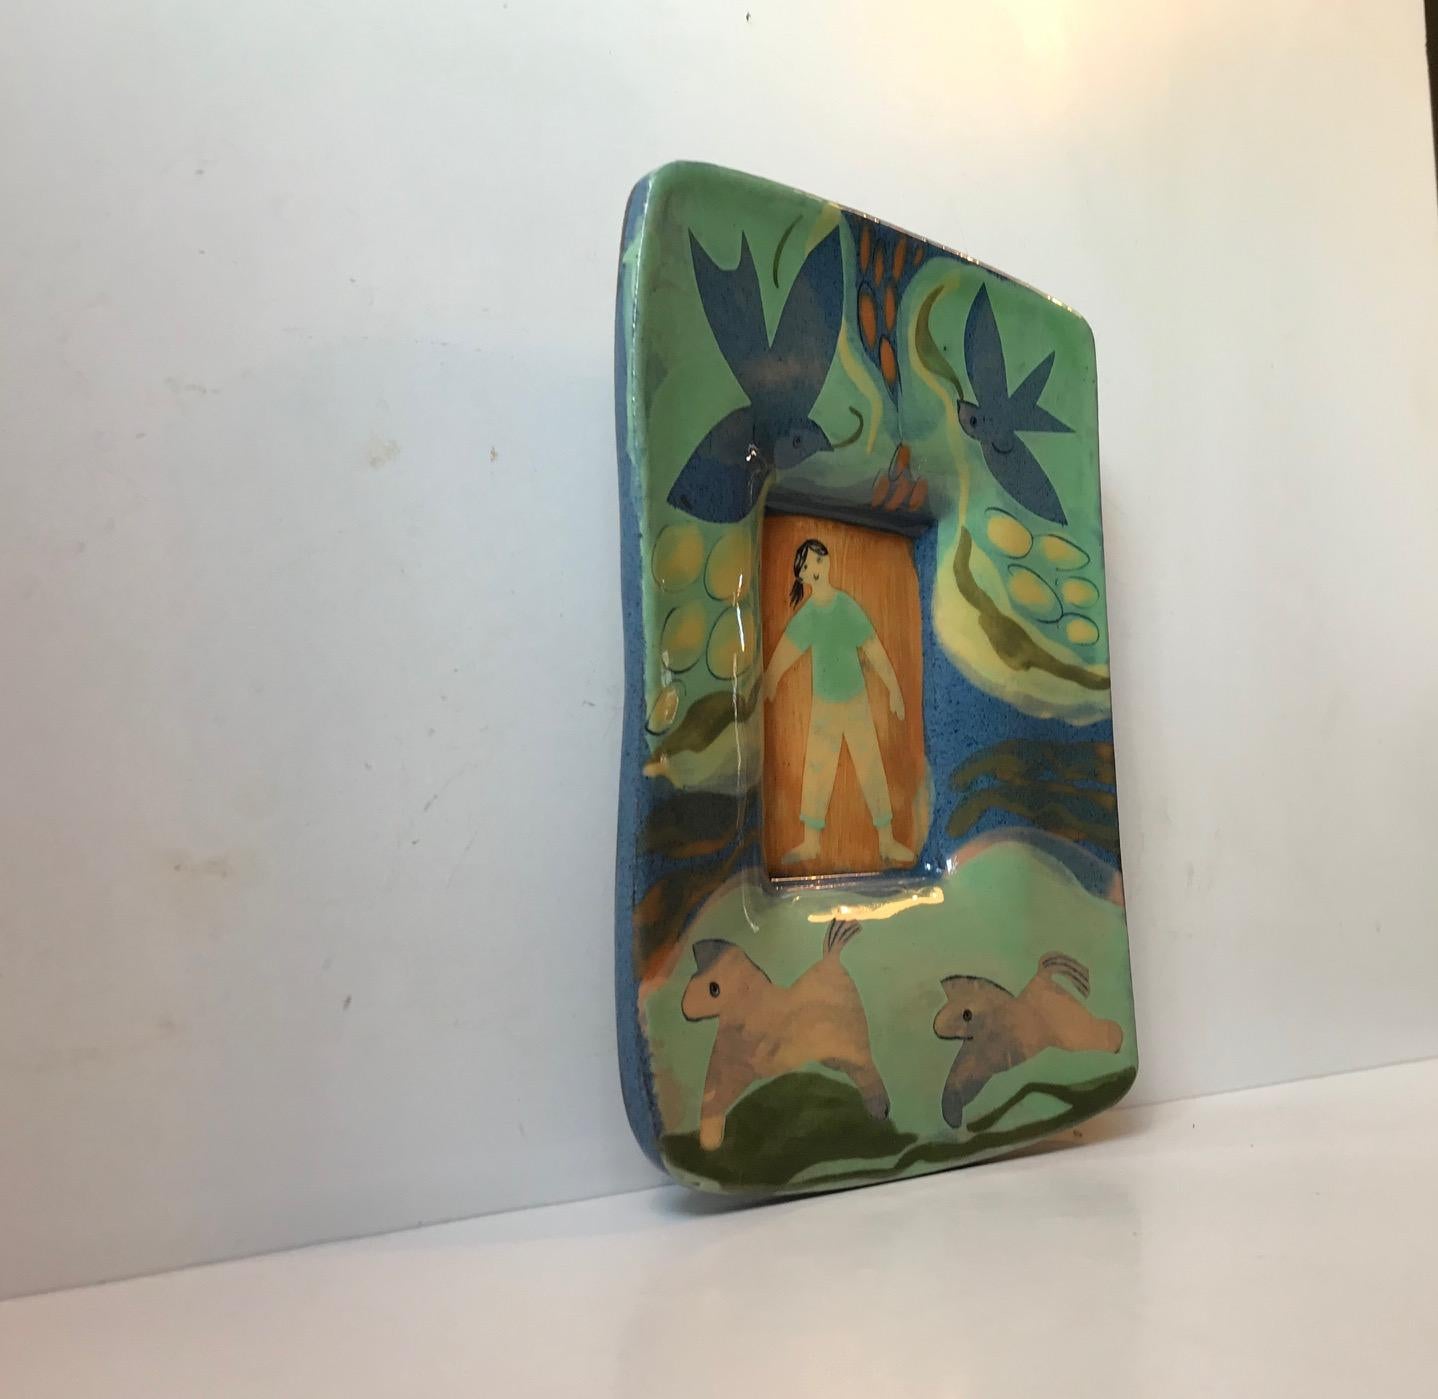 Die lebhafte und glänzende Farbpalette dieser Wandtafel aus Keramik zeigt ein Mädchen oder eine Frau, die im Bett liegt, umgeben von einer naiven Traumlandschaft. Es wurde in den 1960er oder 1970er Jahren in Skandinavien von einem anonymen Künstler